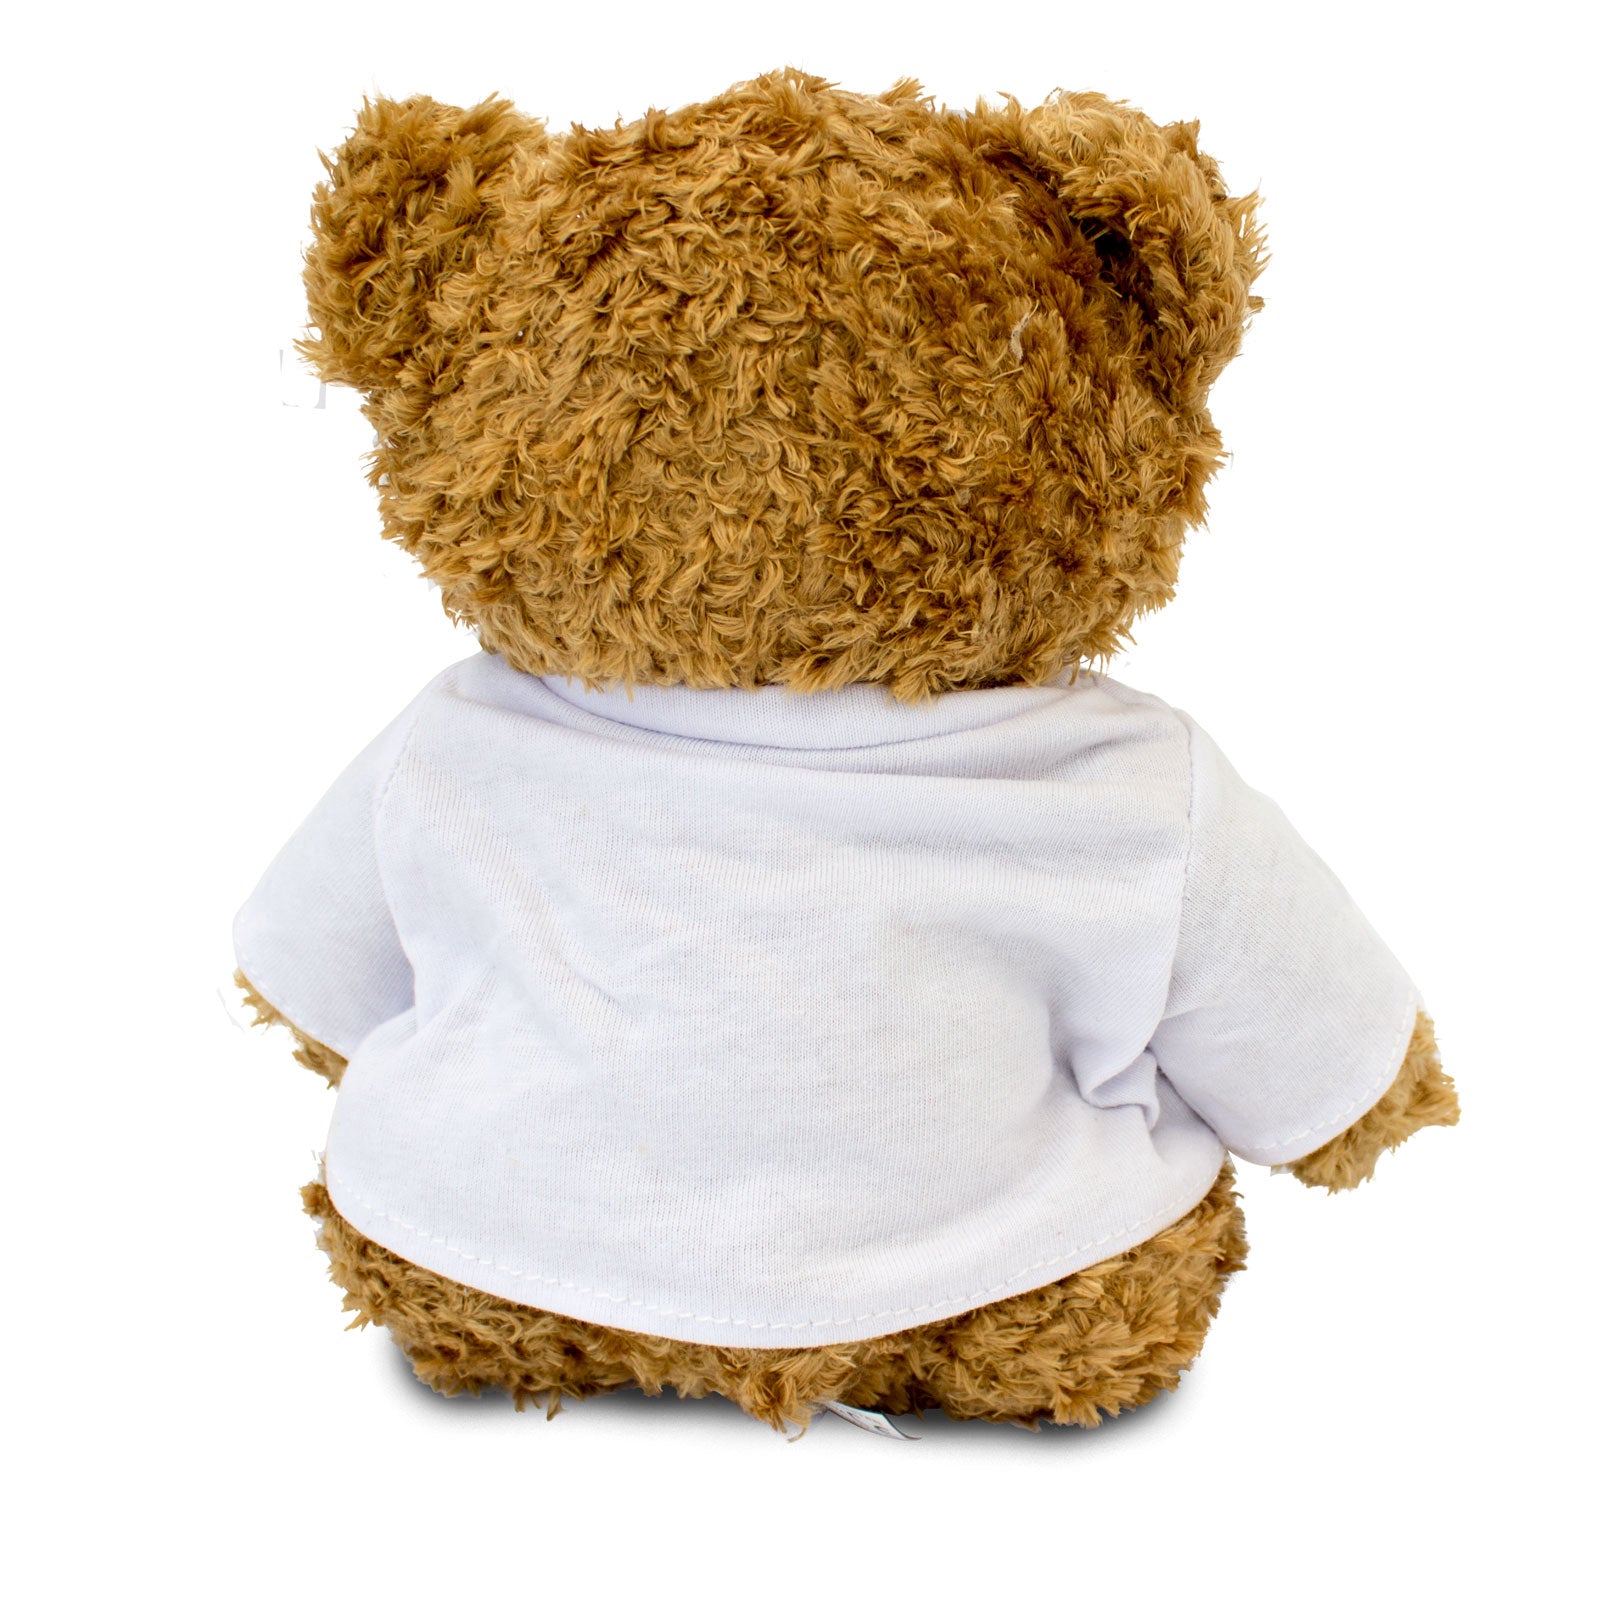 Get Well Soon Jenkins - Teddy Bear